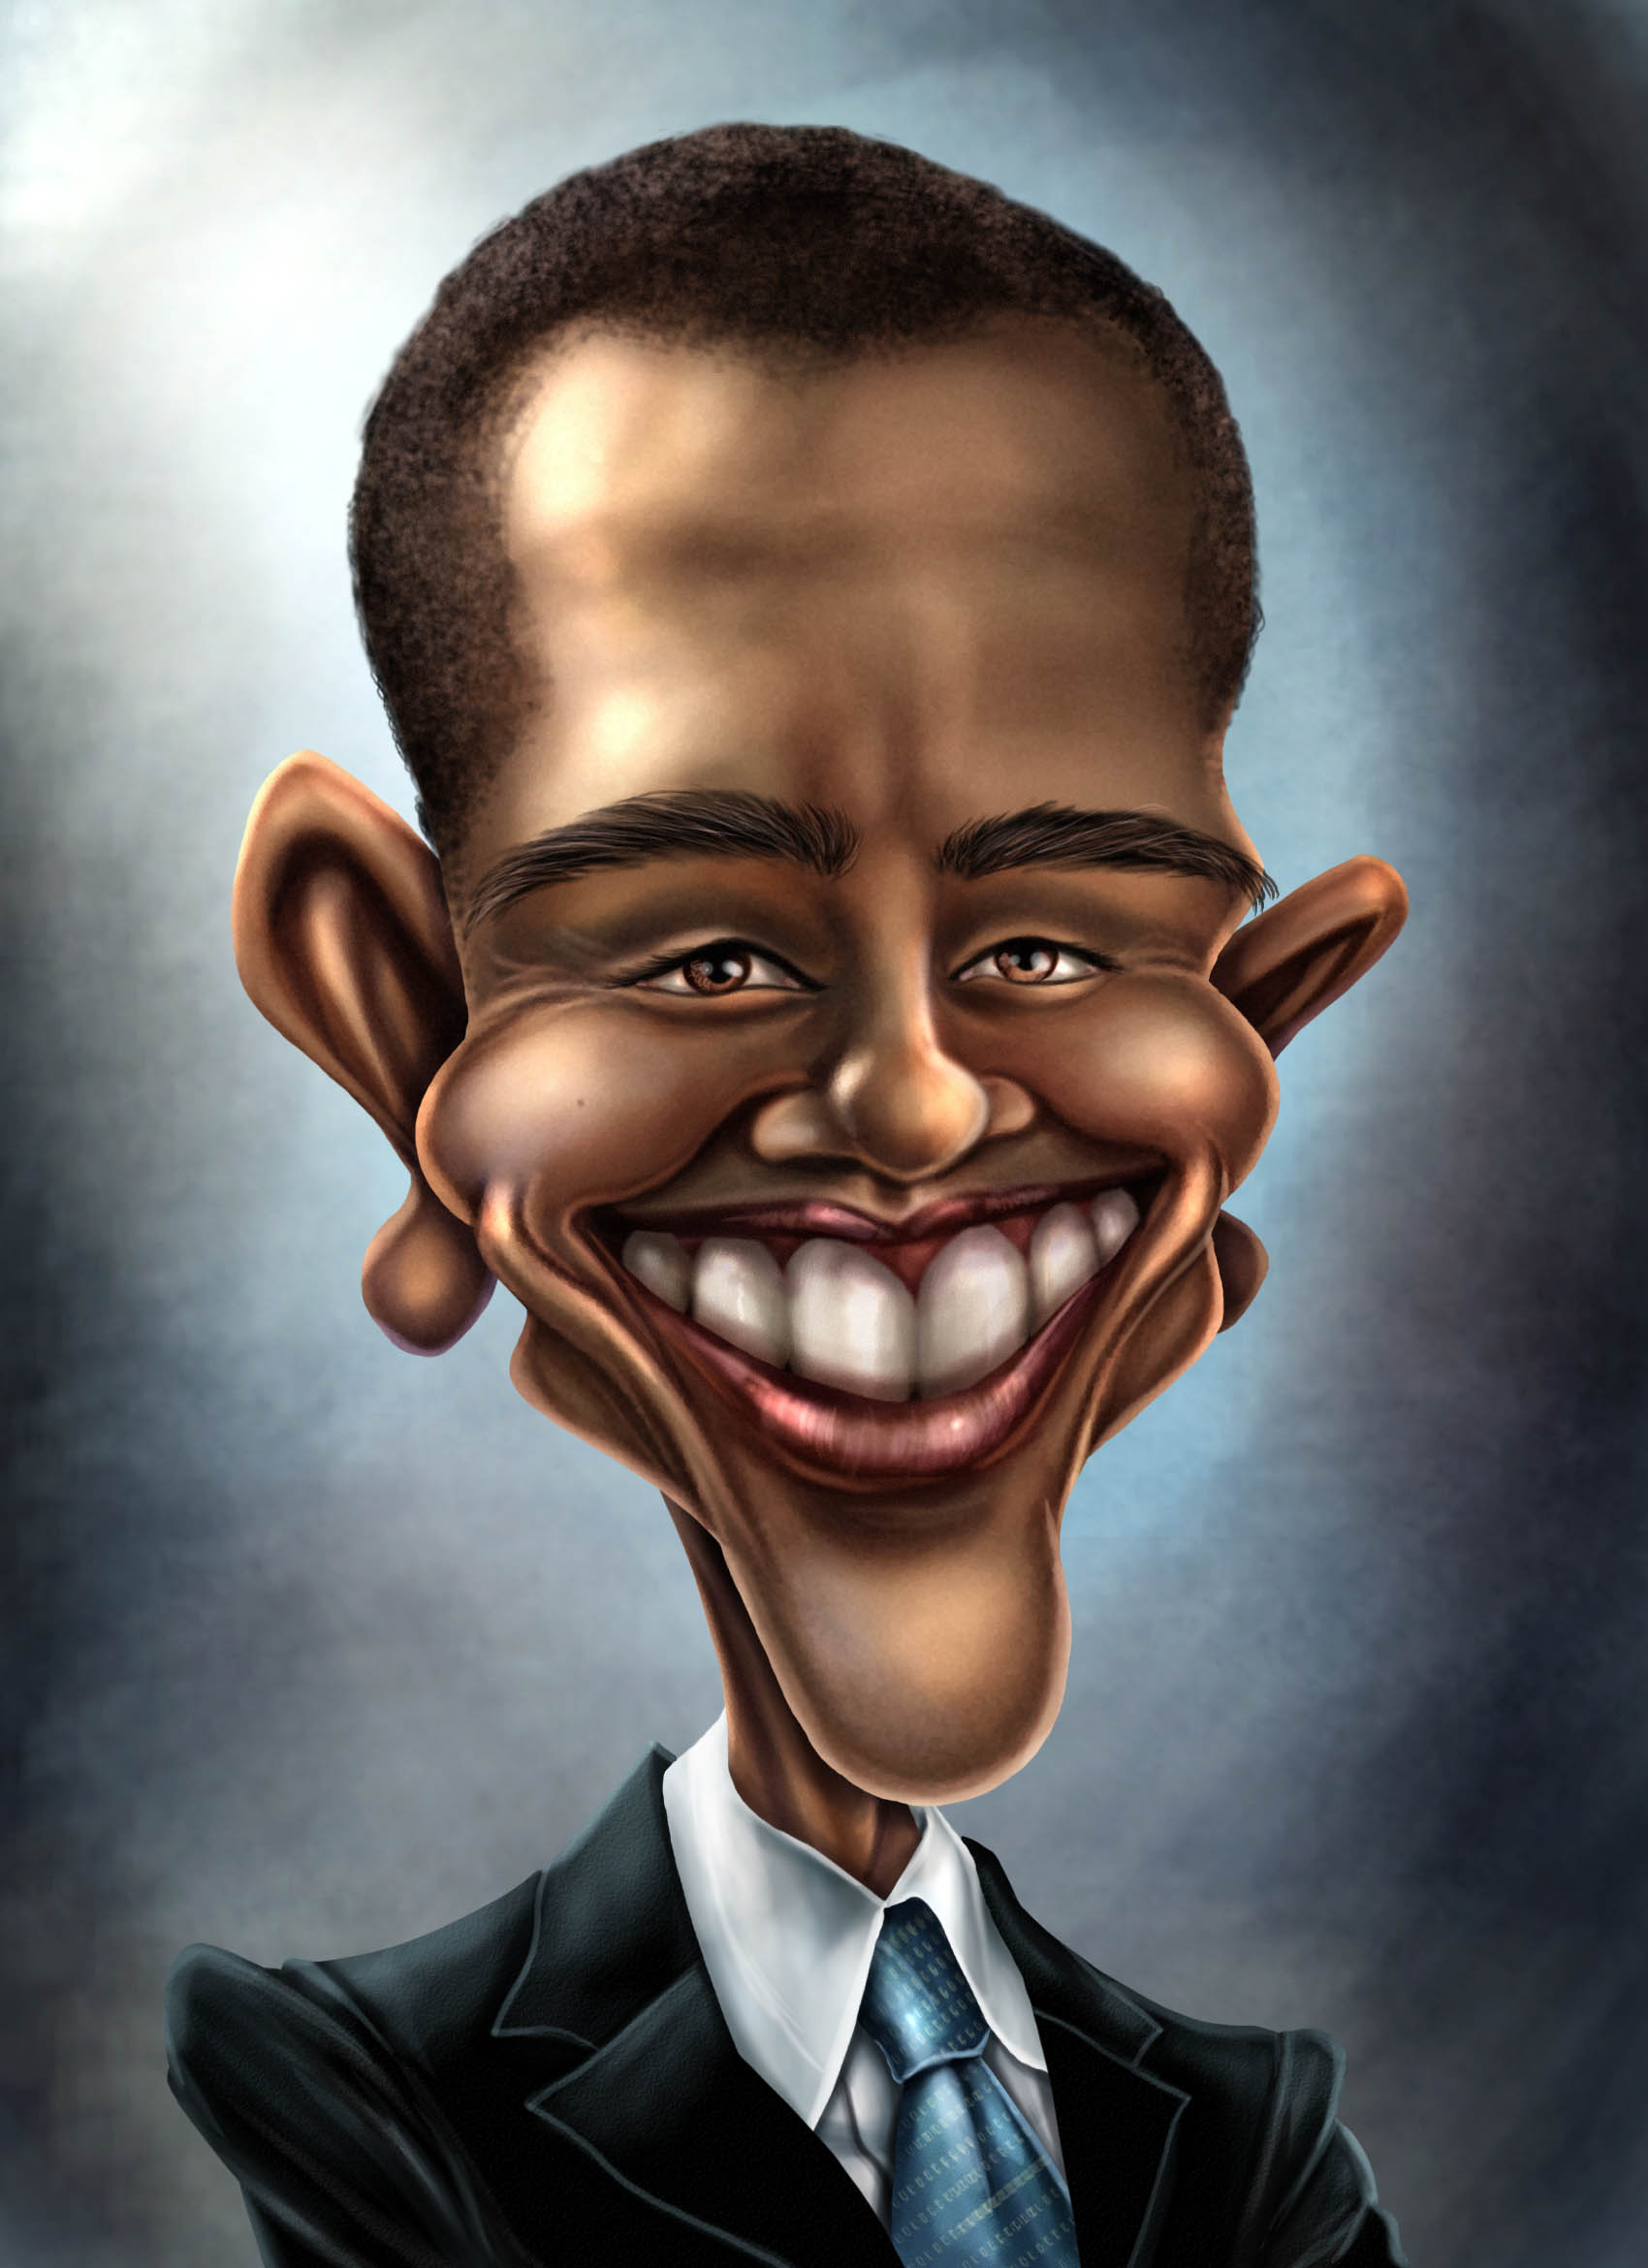 1 к рикатура б гряный об яние. Сатирический портрет Обама. Карикатурные портреты Обамы. Сатирические образы человека. Сатиричечкие образ человека.